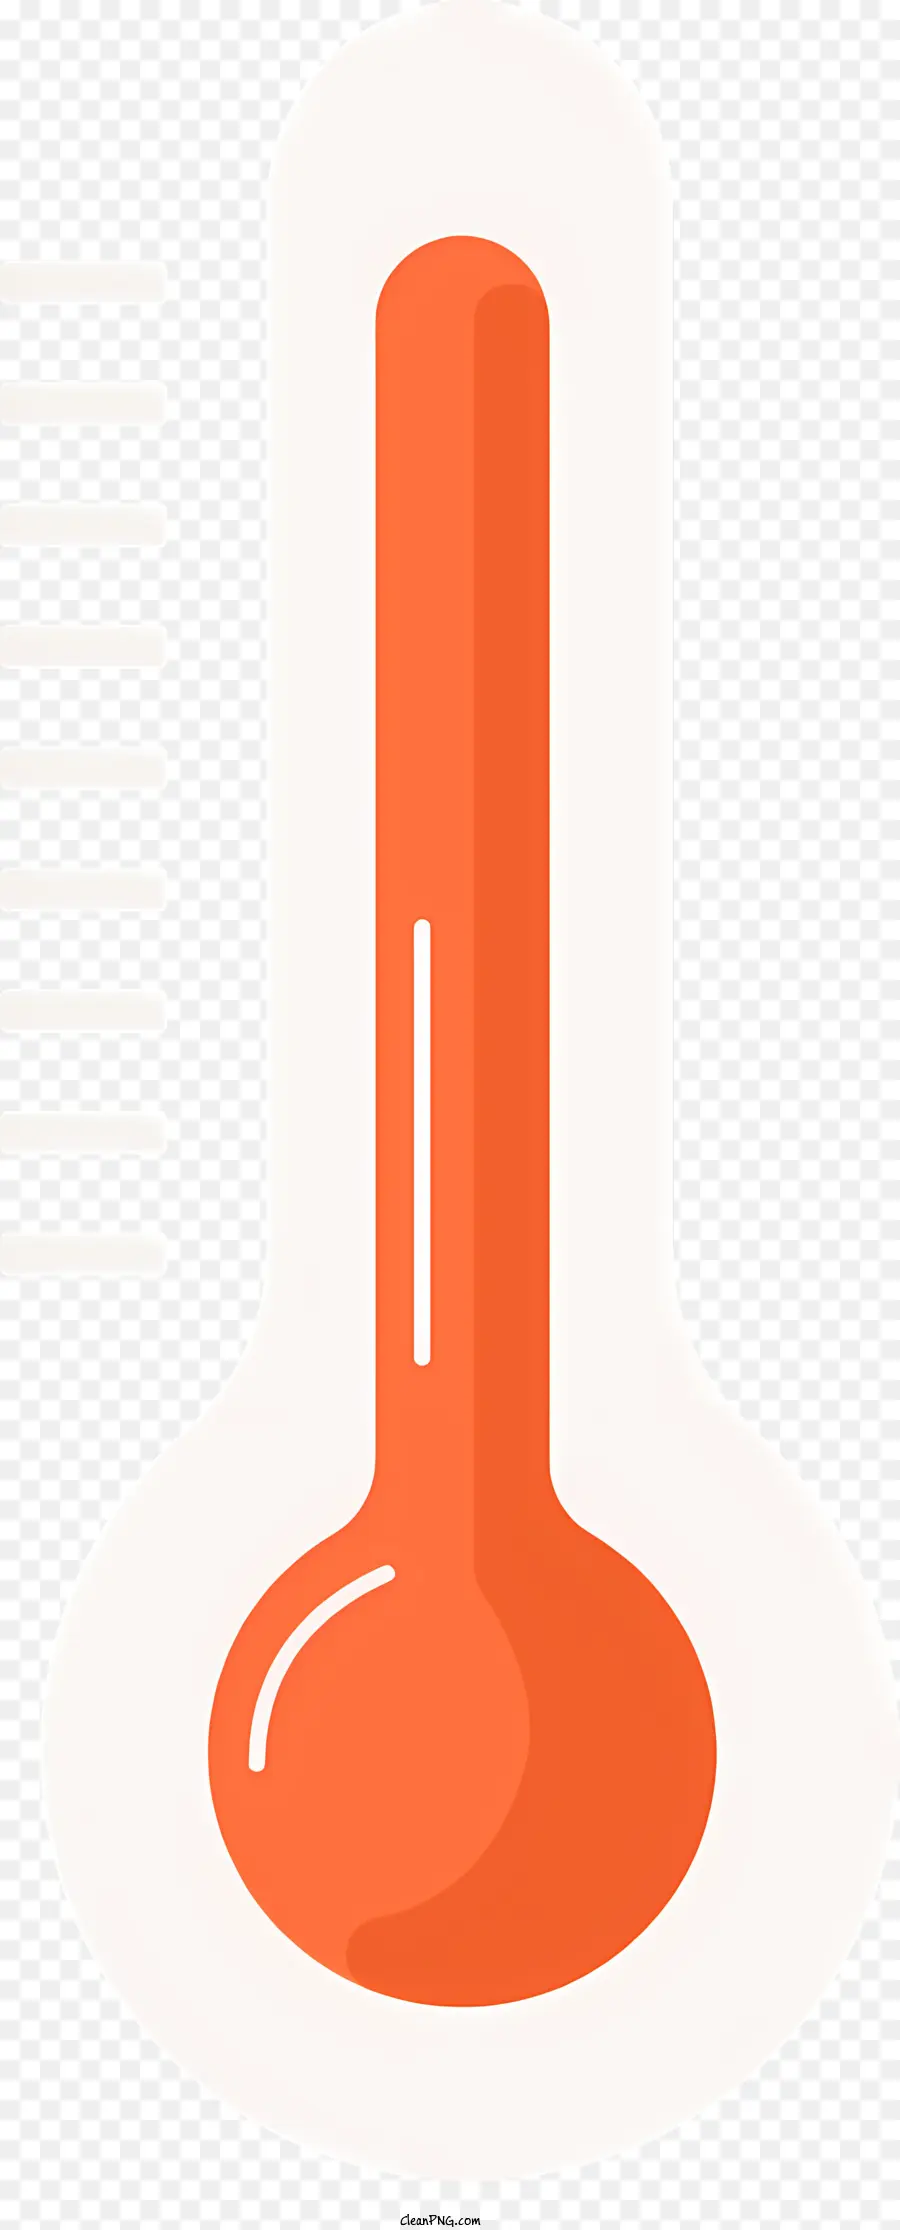 weißen hintergrund - Thermometer mit rotem flüssigem auf 45 und 60 Grad erhitzt